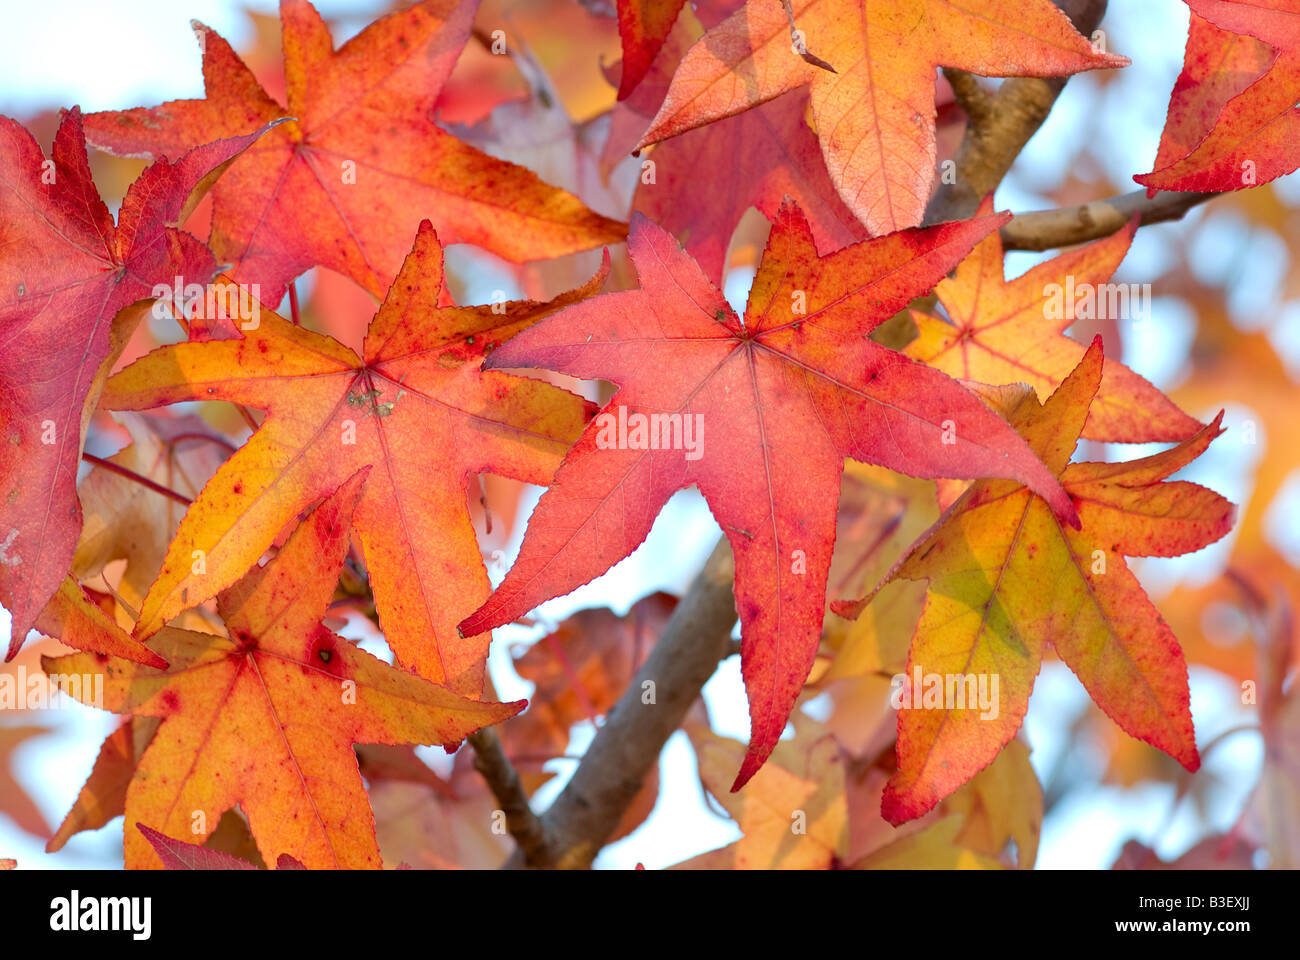 Grande image de belles feuilles d'automne rouge et orange Banque D'Images